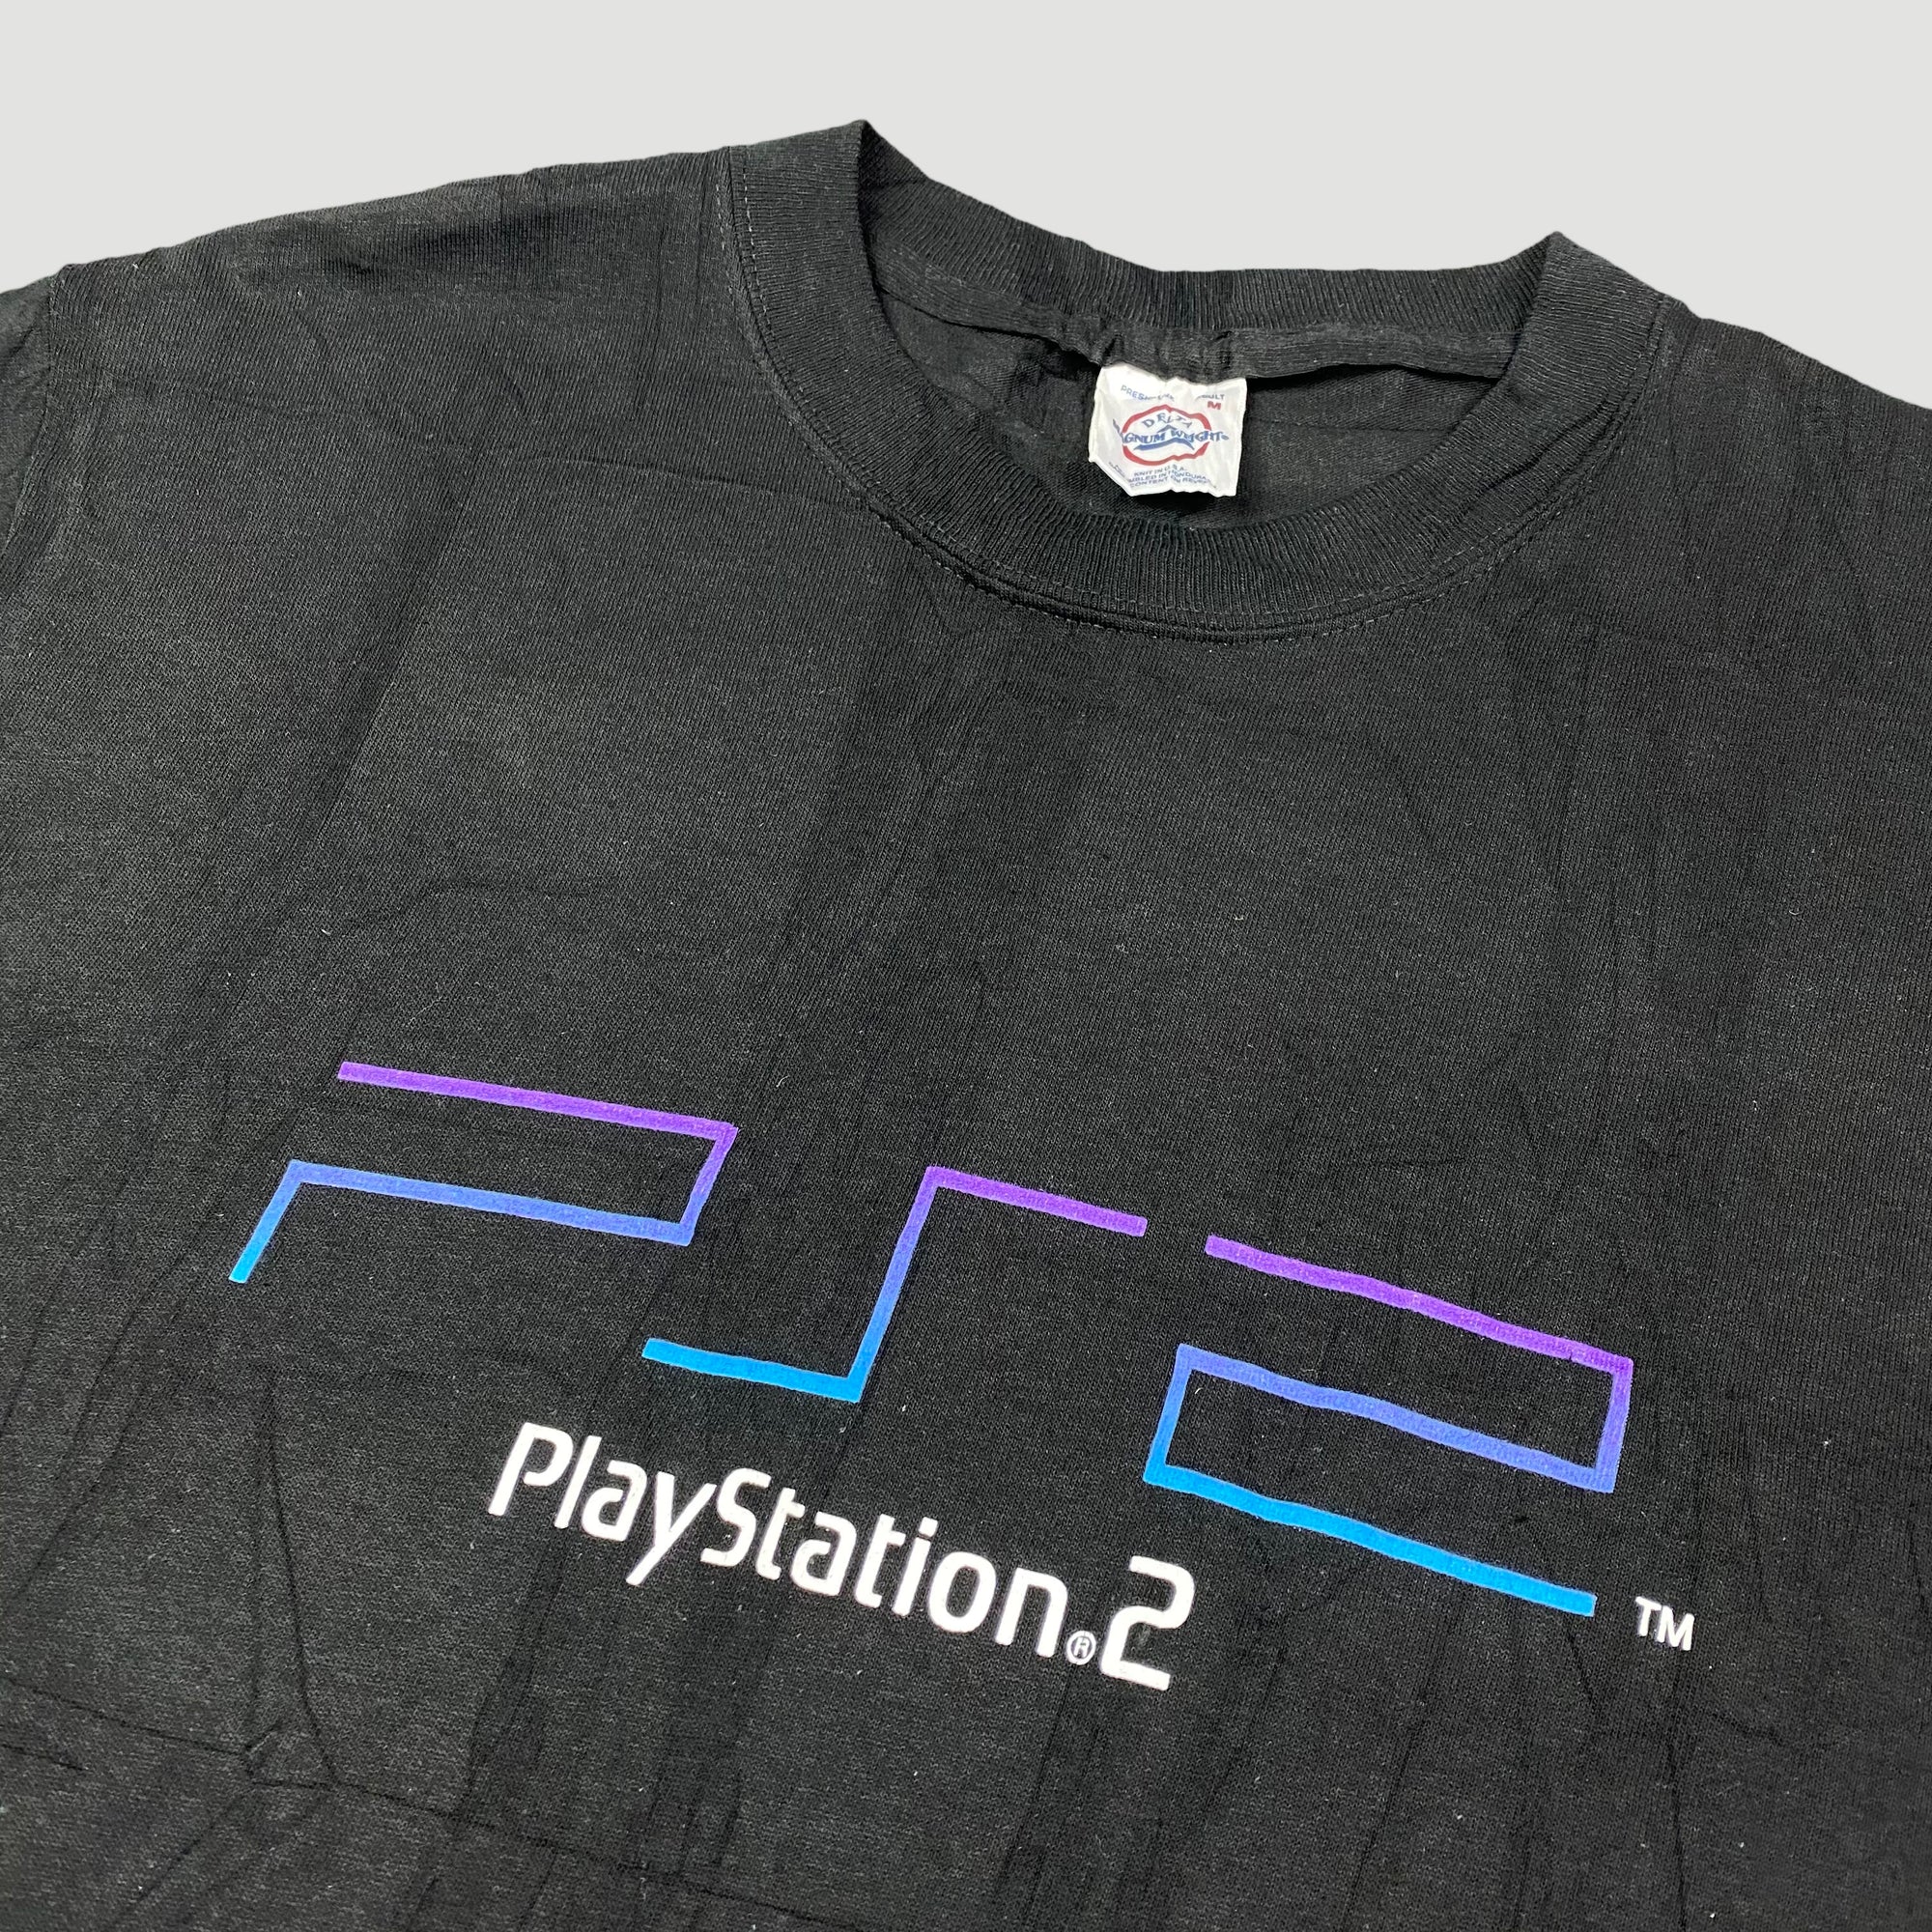 playstation 2 shirt